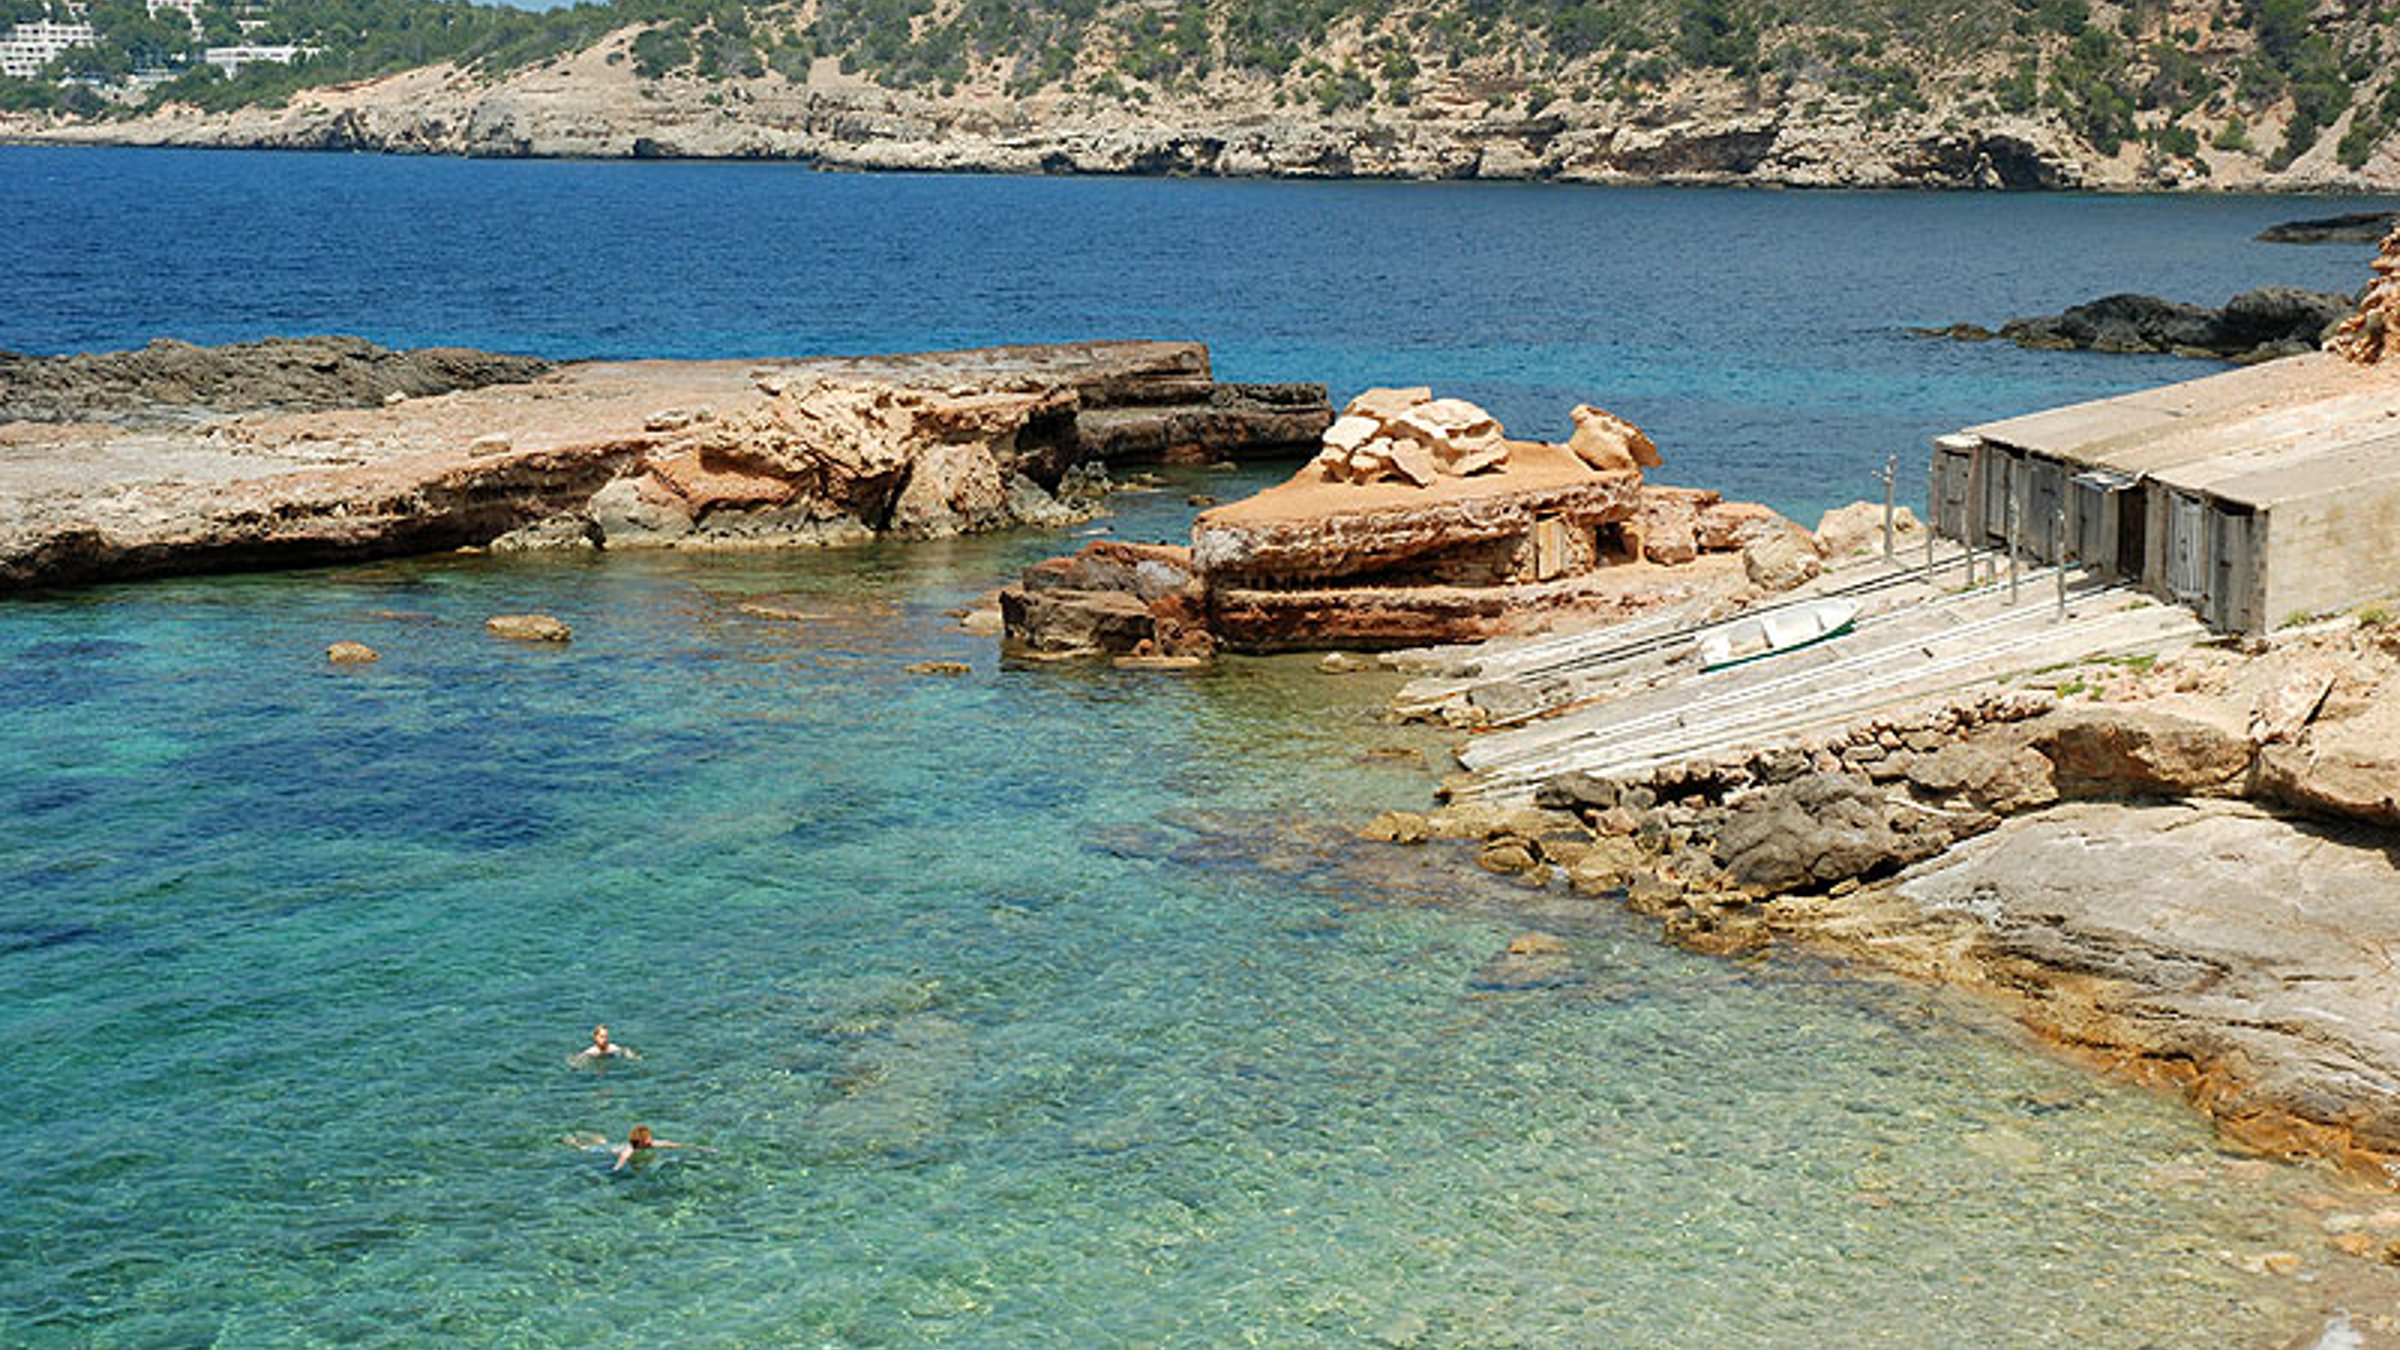 5 Best Beaches in Ibiza